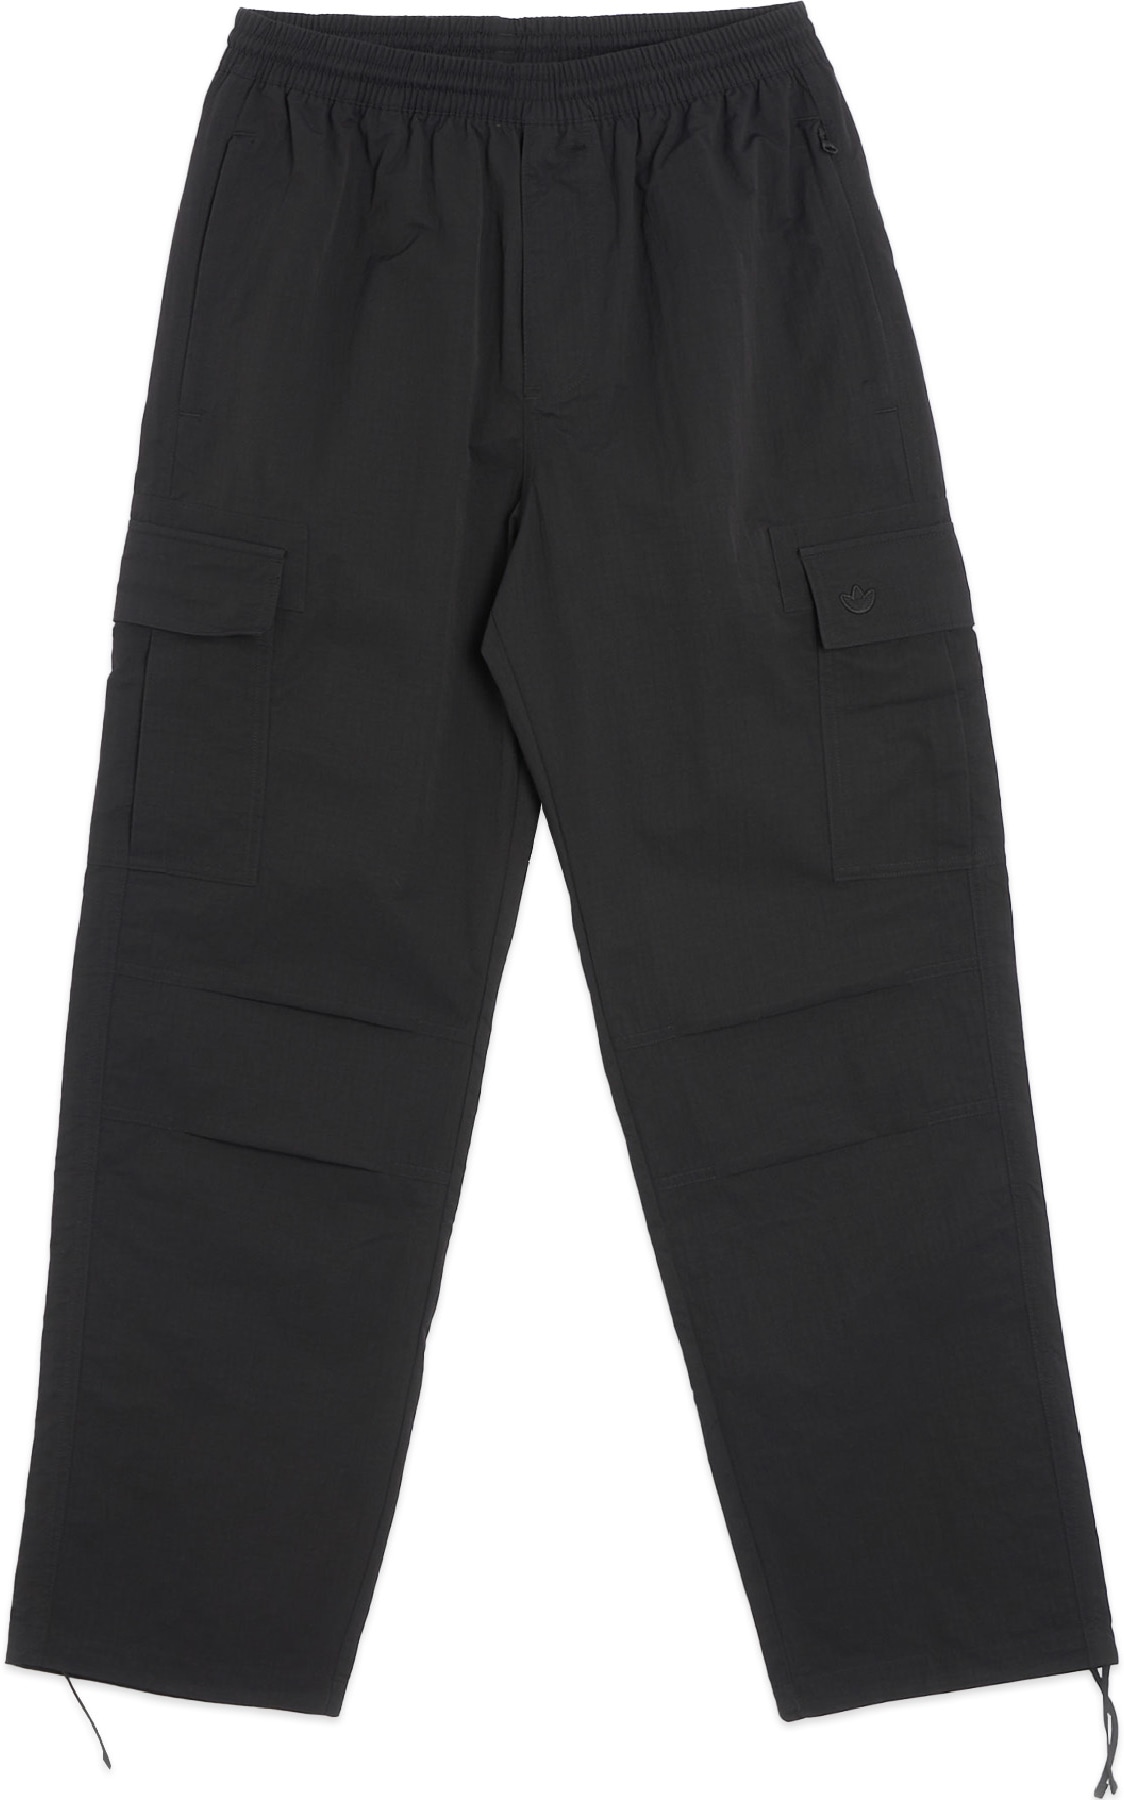 adidas Originals PREMIUM ESSENTIALS - Cargo trousers - black